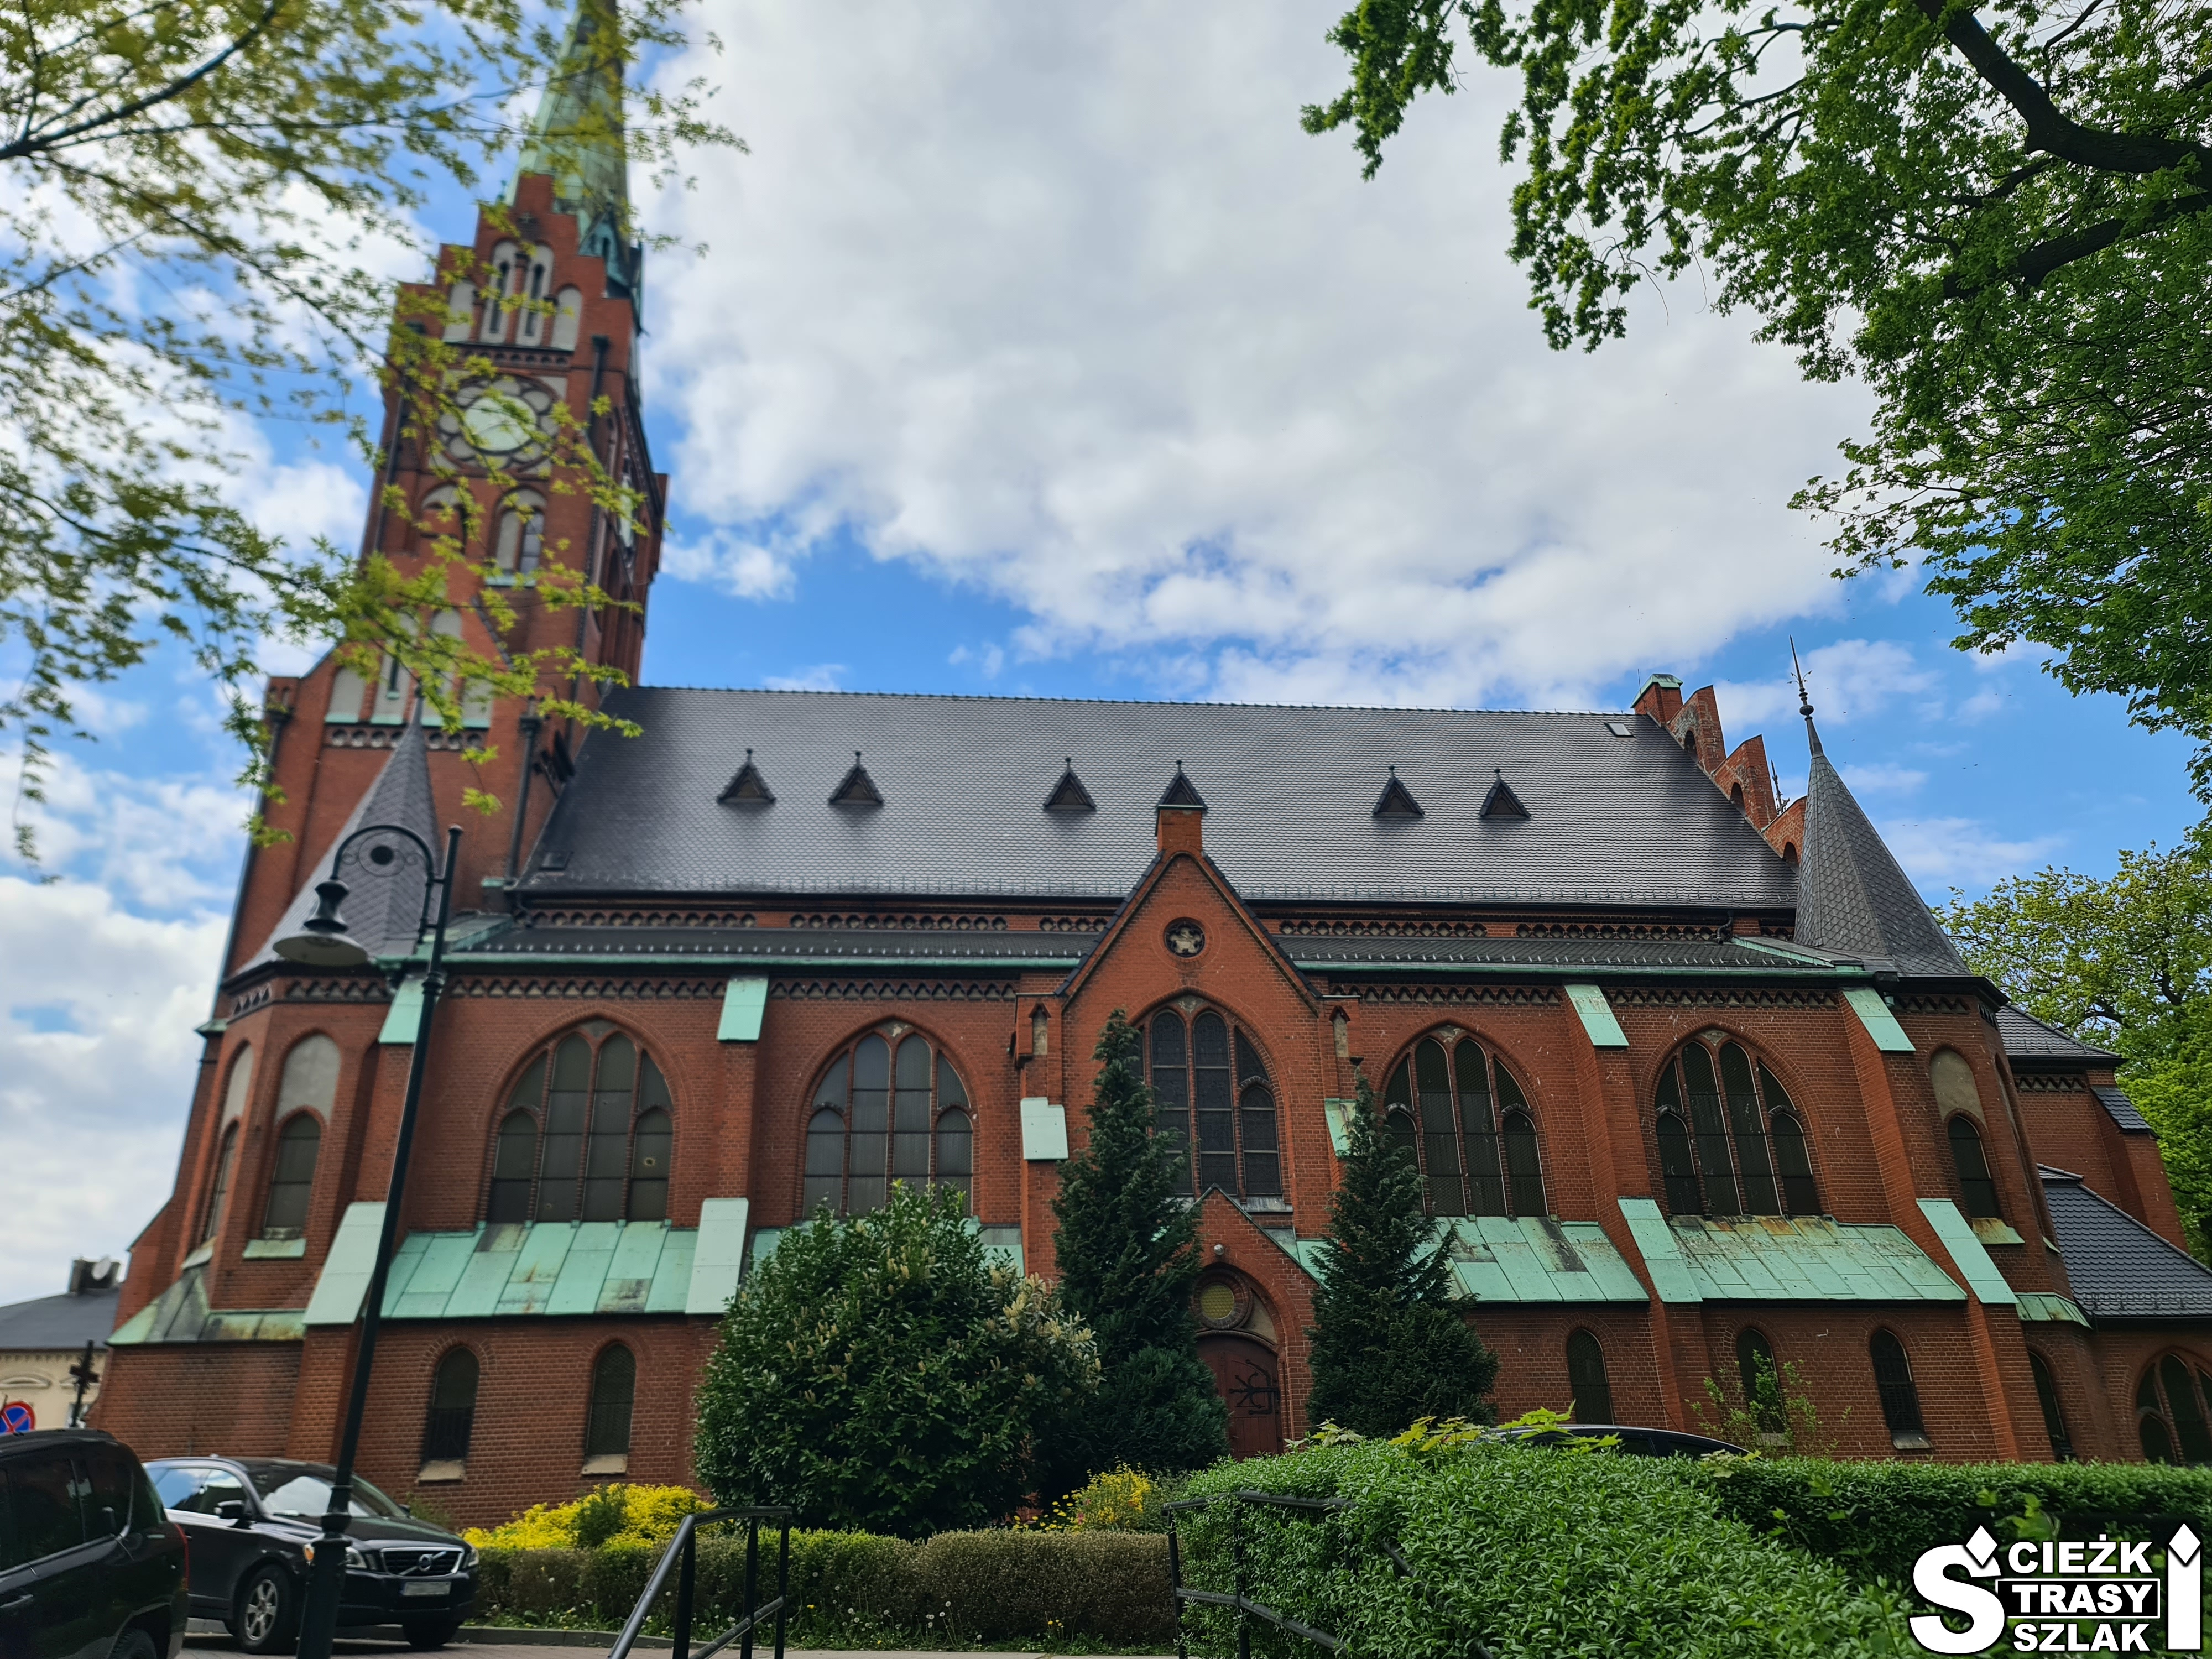 Kościół NMP Królowej Polski w Świebodzinie z cegły z wysoką wieżą i łukowatymi oknami przy parku miejskim